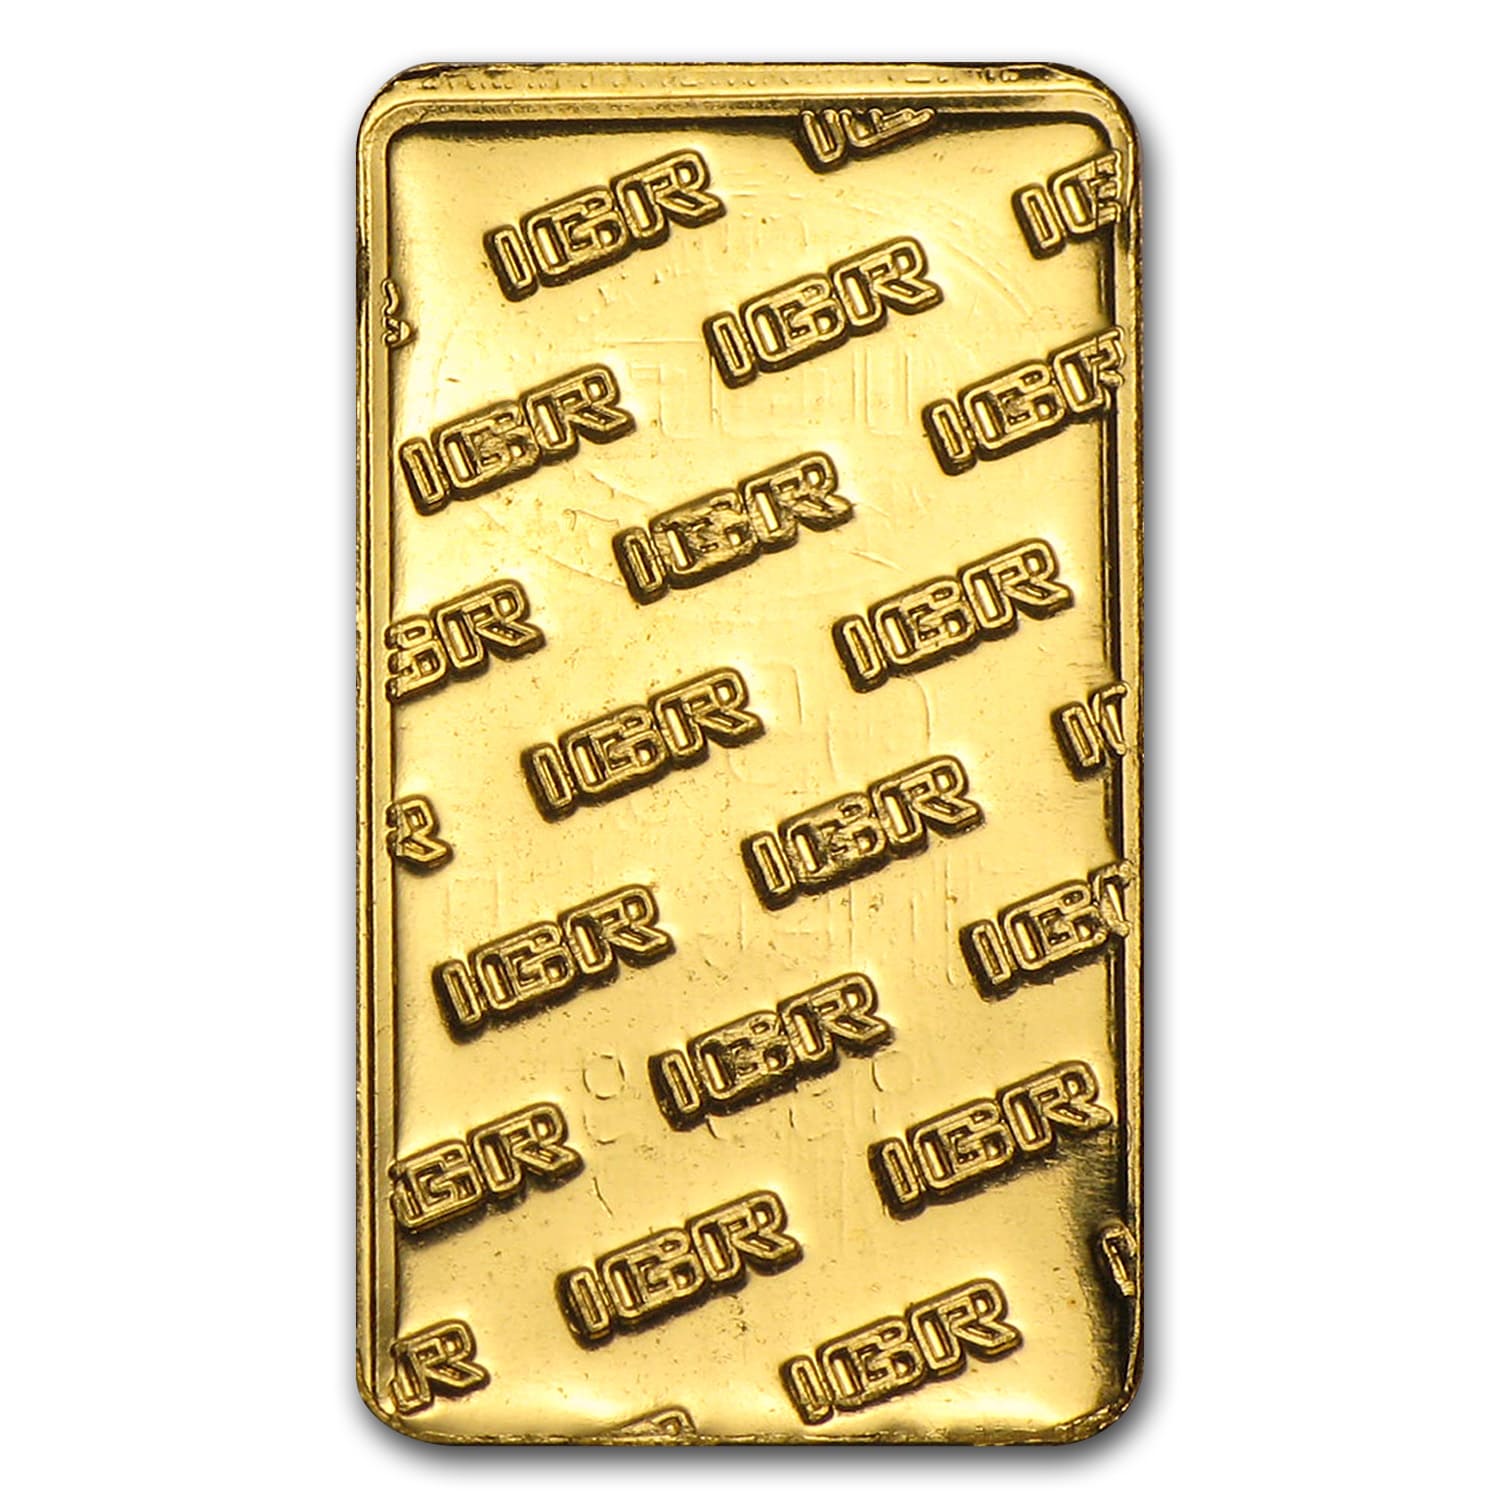 1/2 gram Gold Bar - Secondary Market - SKU #60865 | eBay